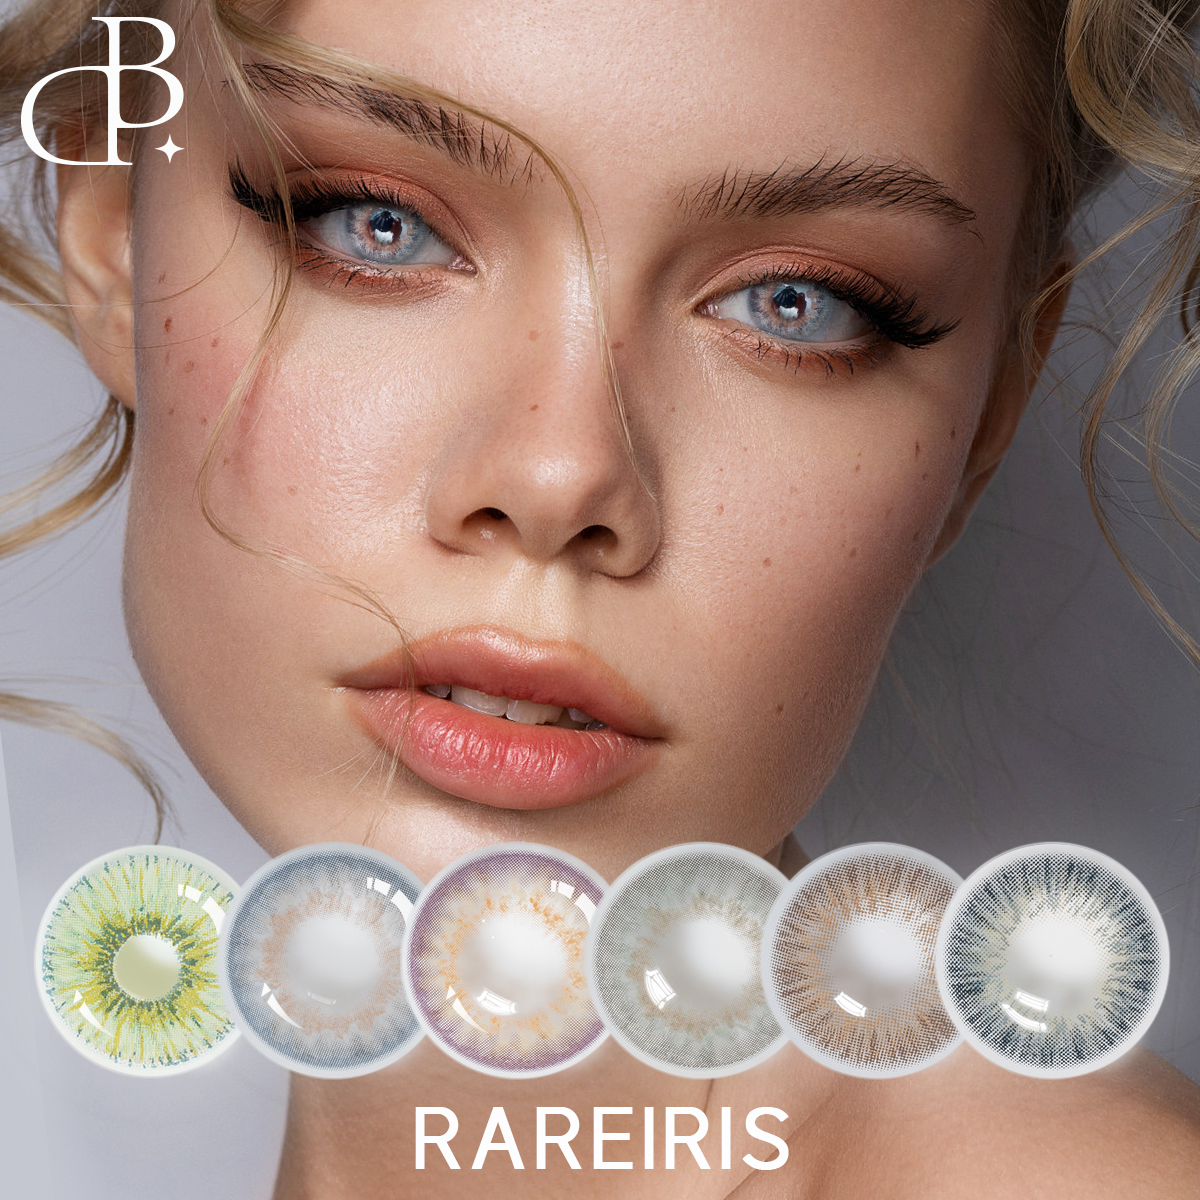 RAREIRIS Hot Sale 1 Year Color Contact Lens Wholesale Contact Lenses Colored Eye Contact Lenses